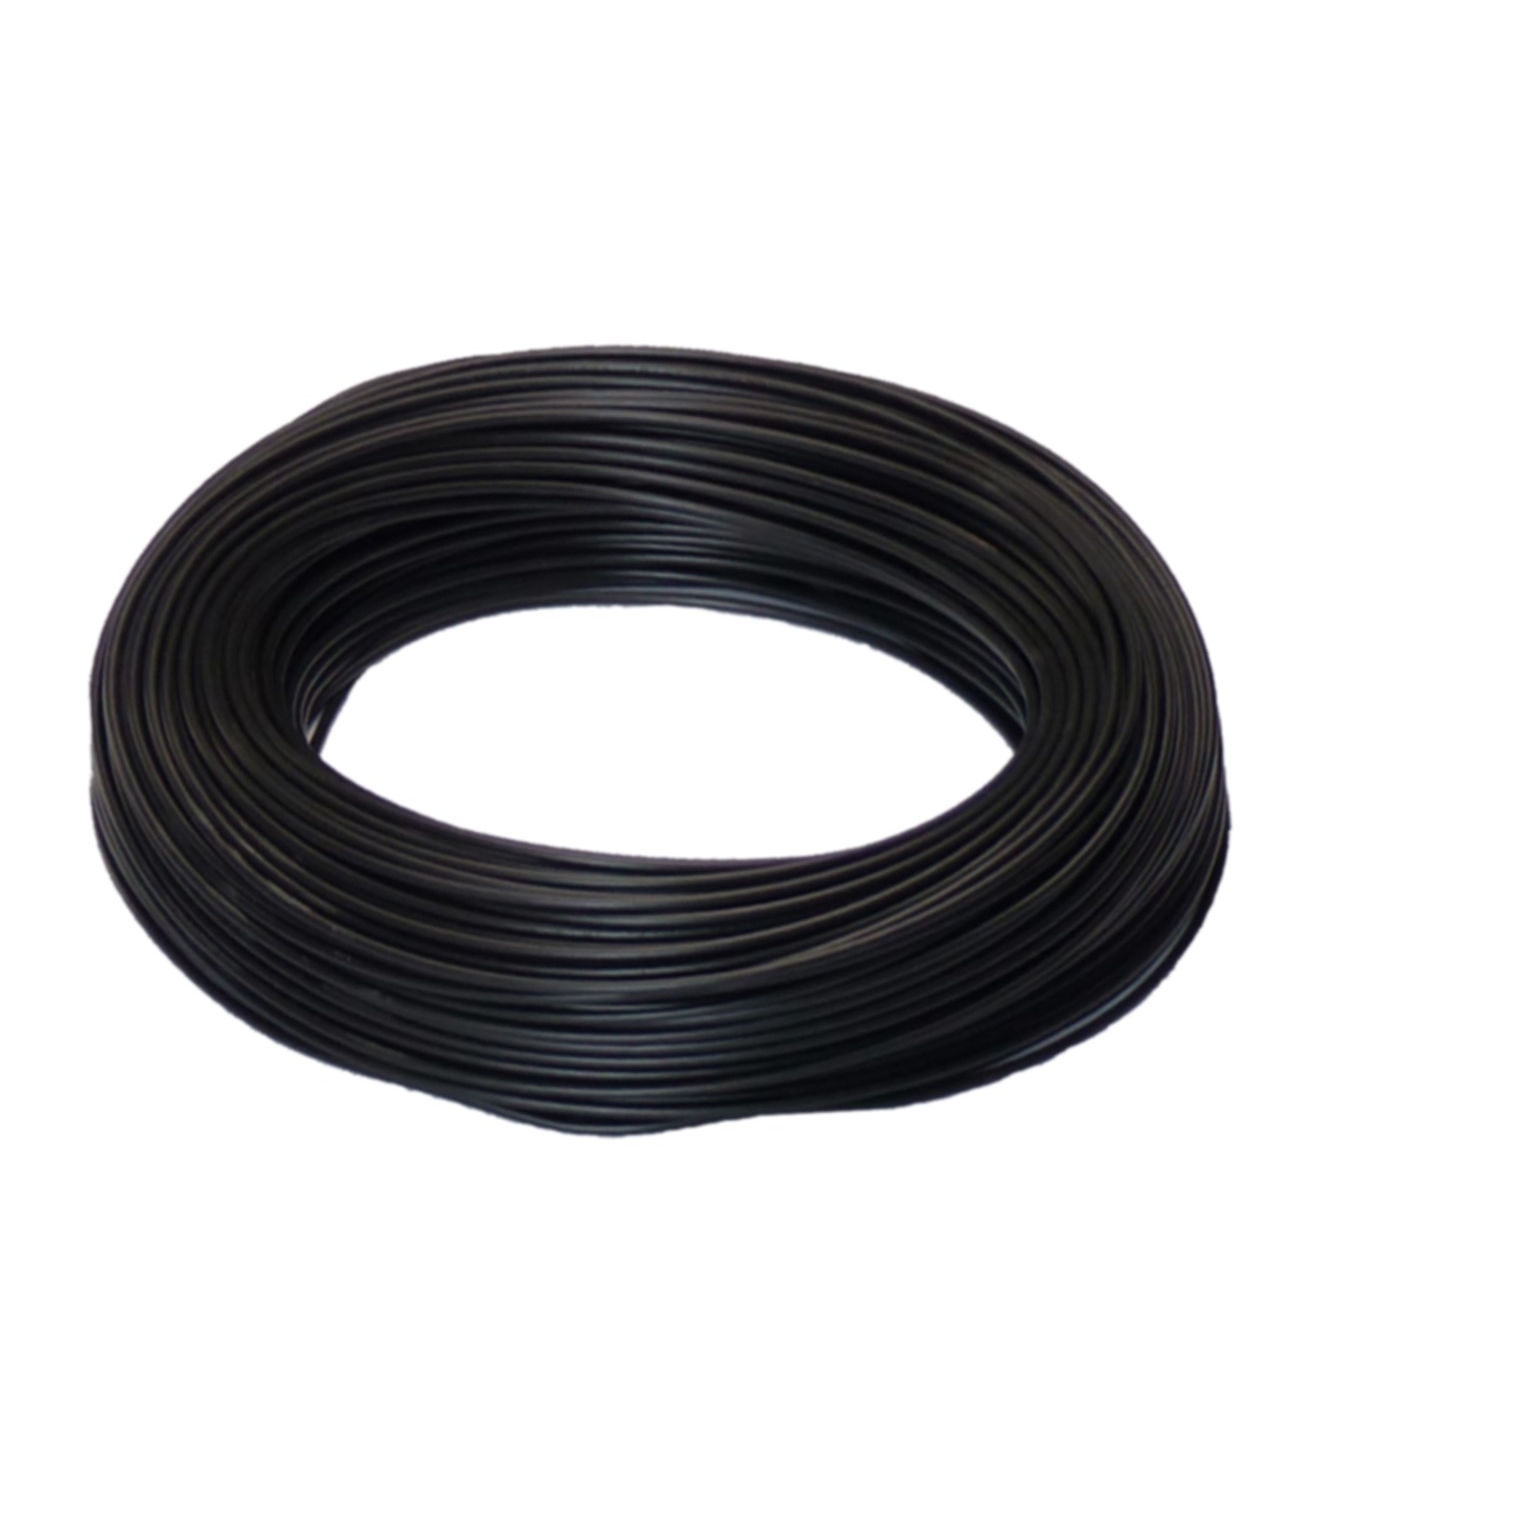 100m Ring H07V-K, 1 x 1,5 mm², schwarz